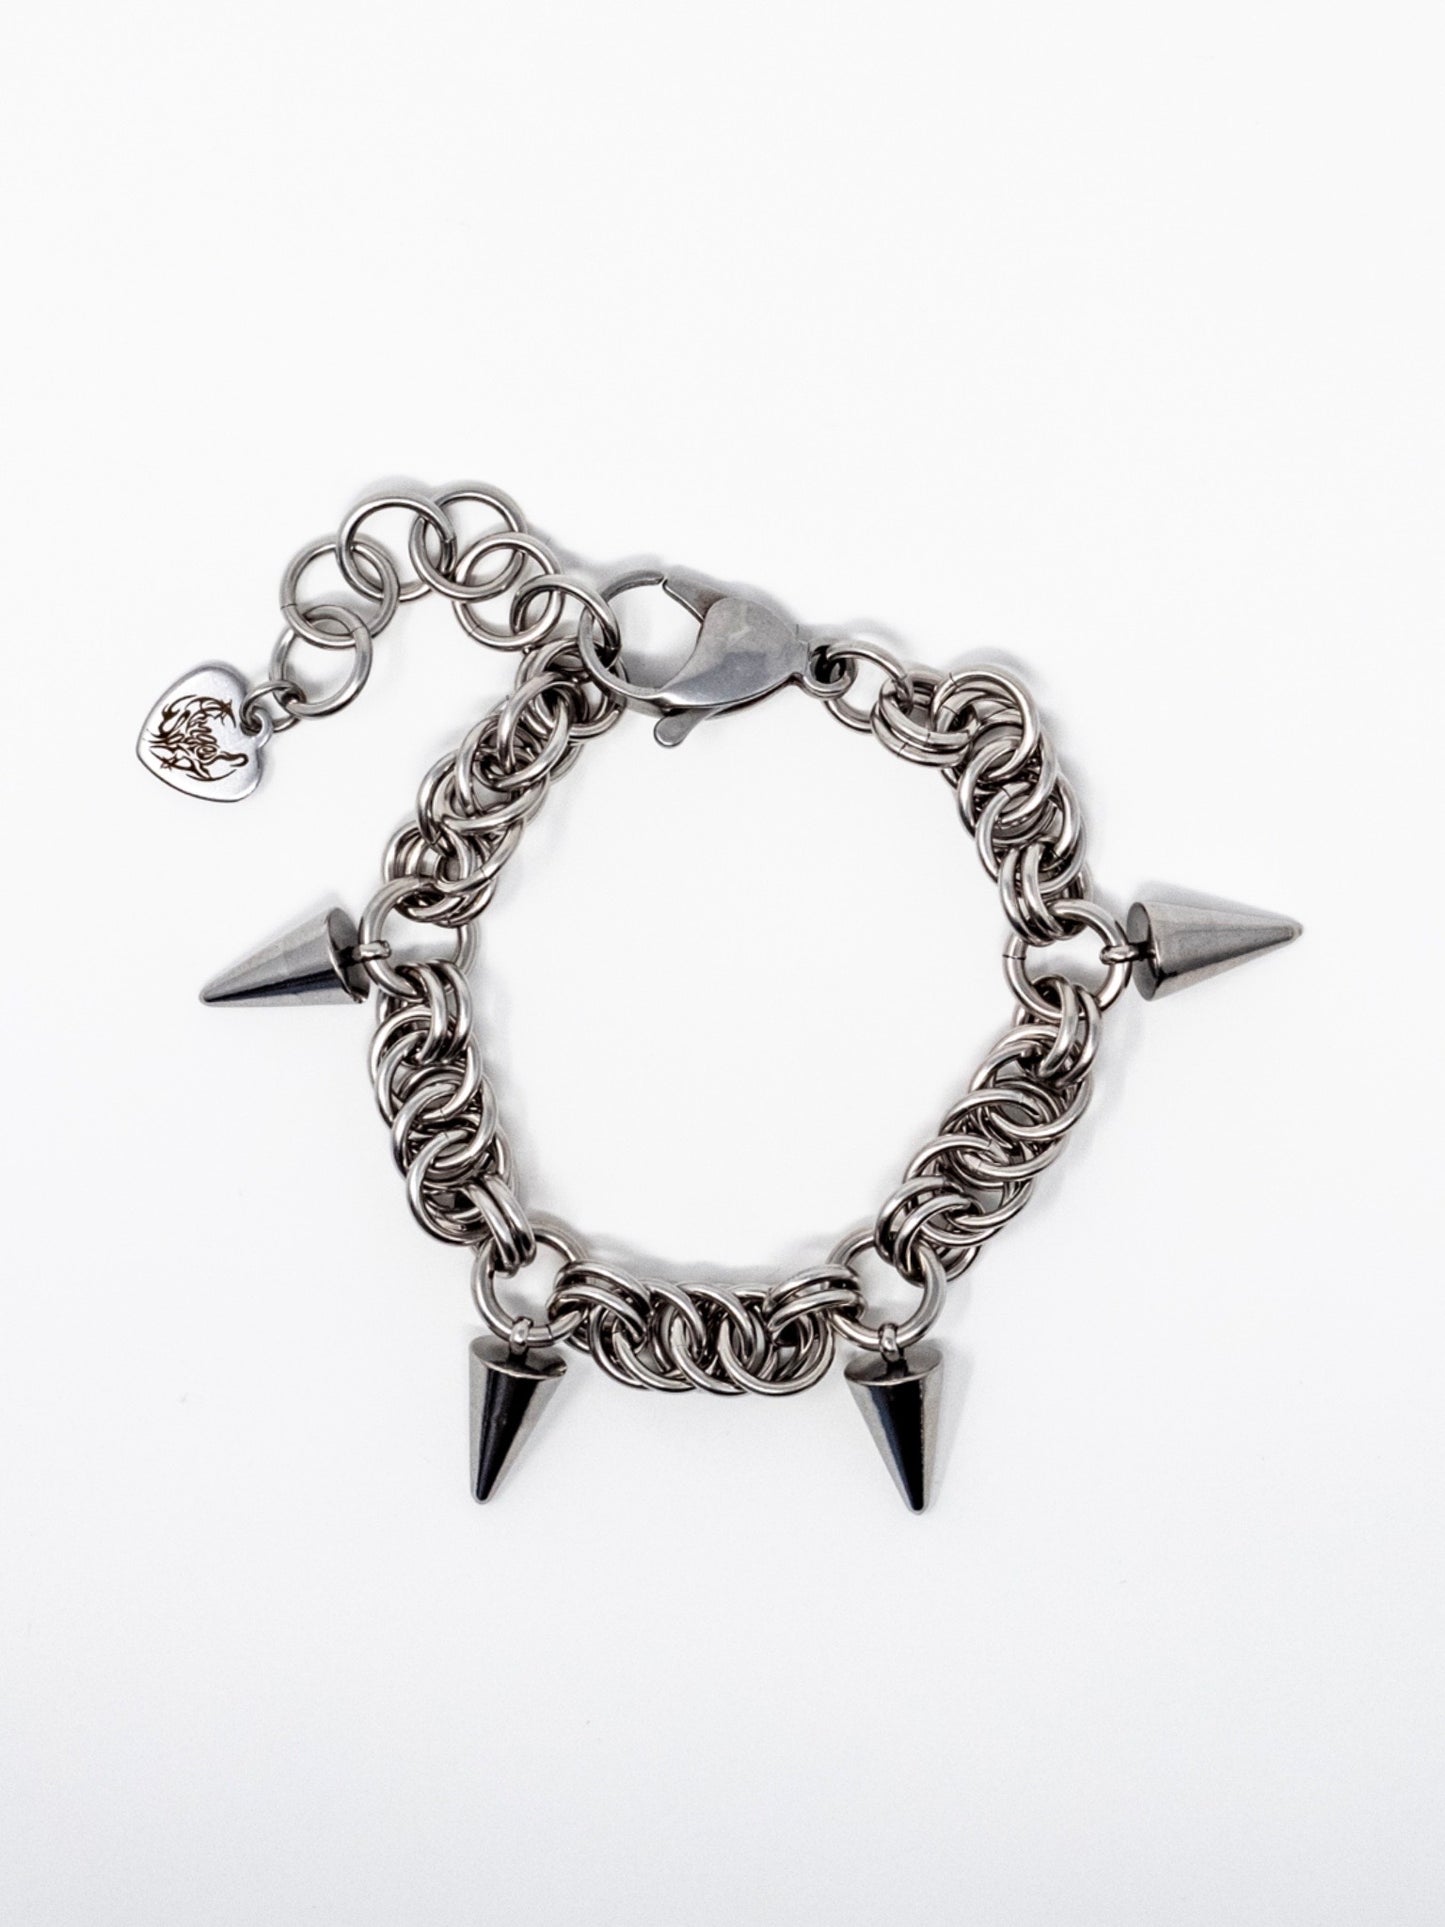 Chain of Thorns Bracelet